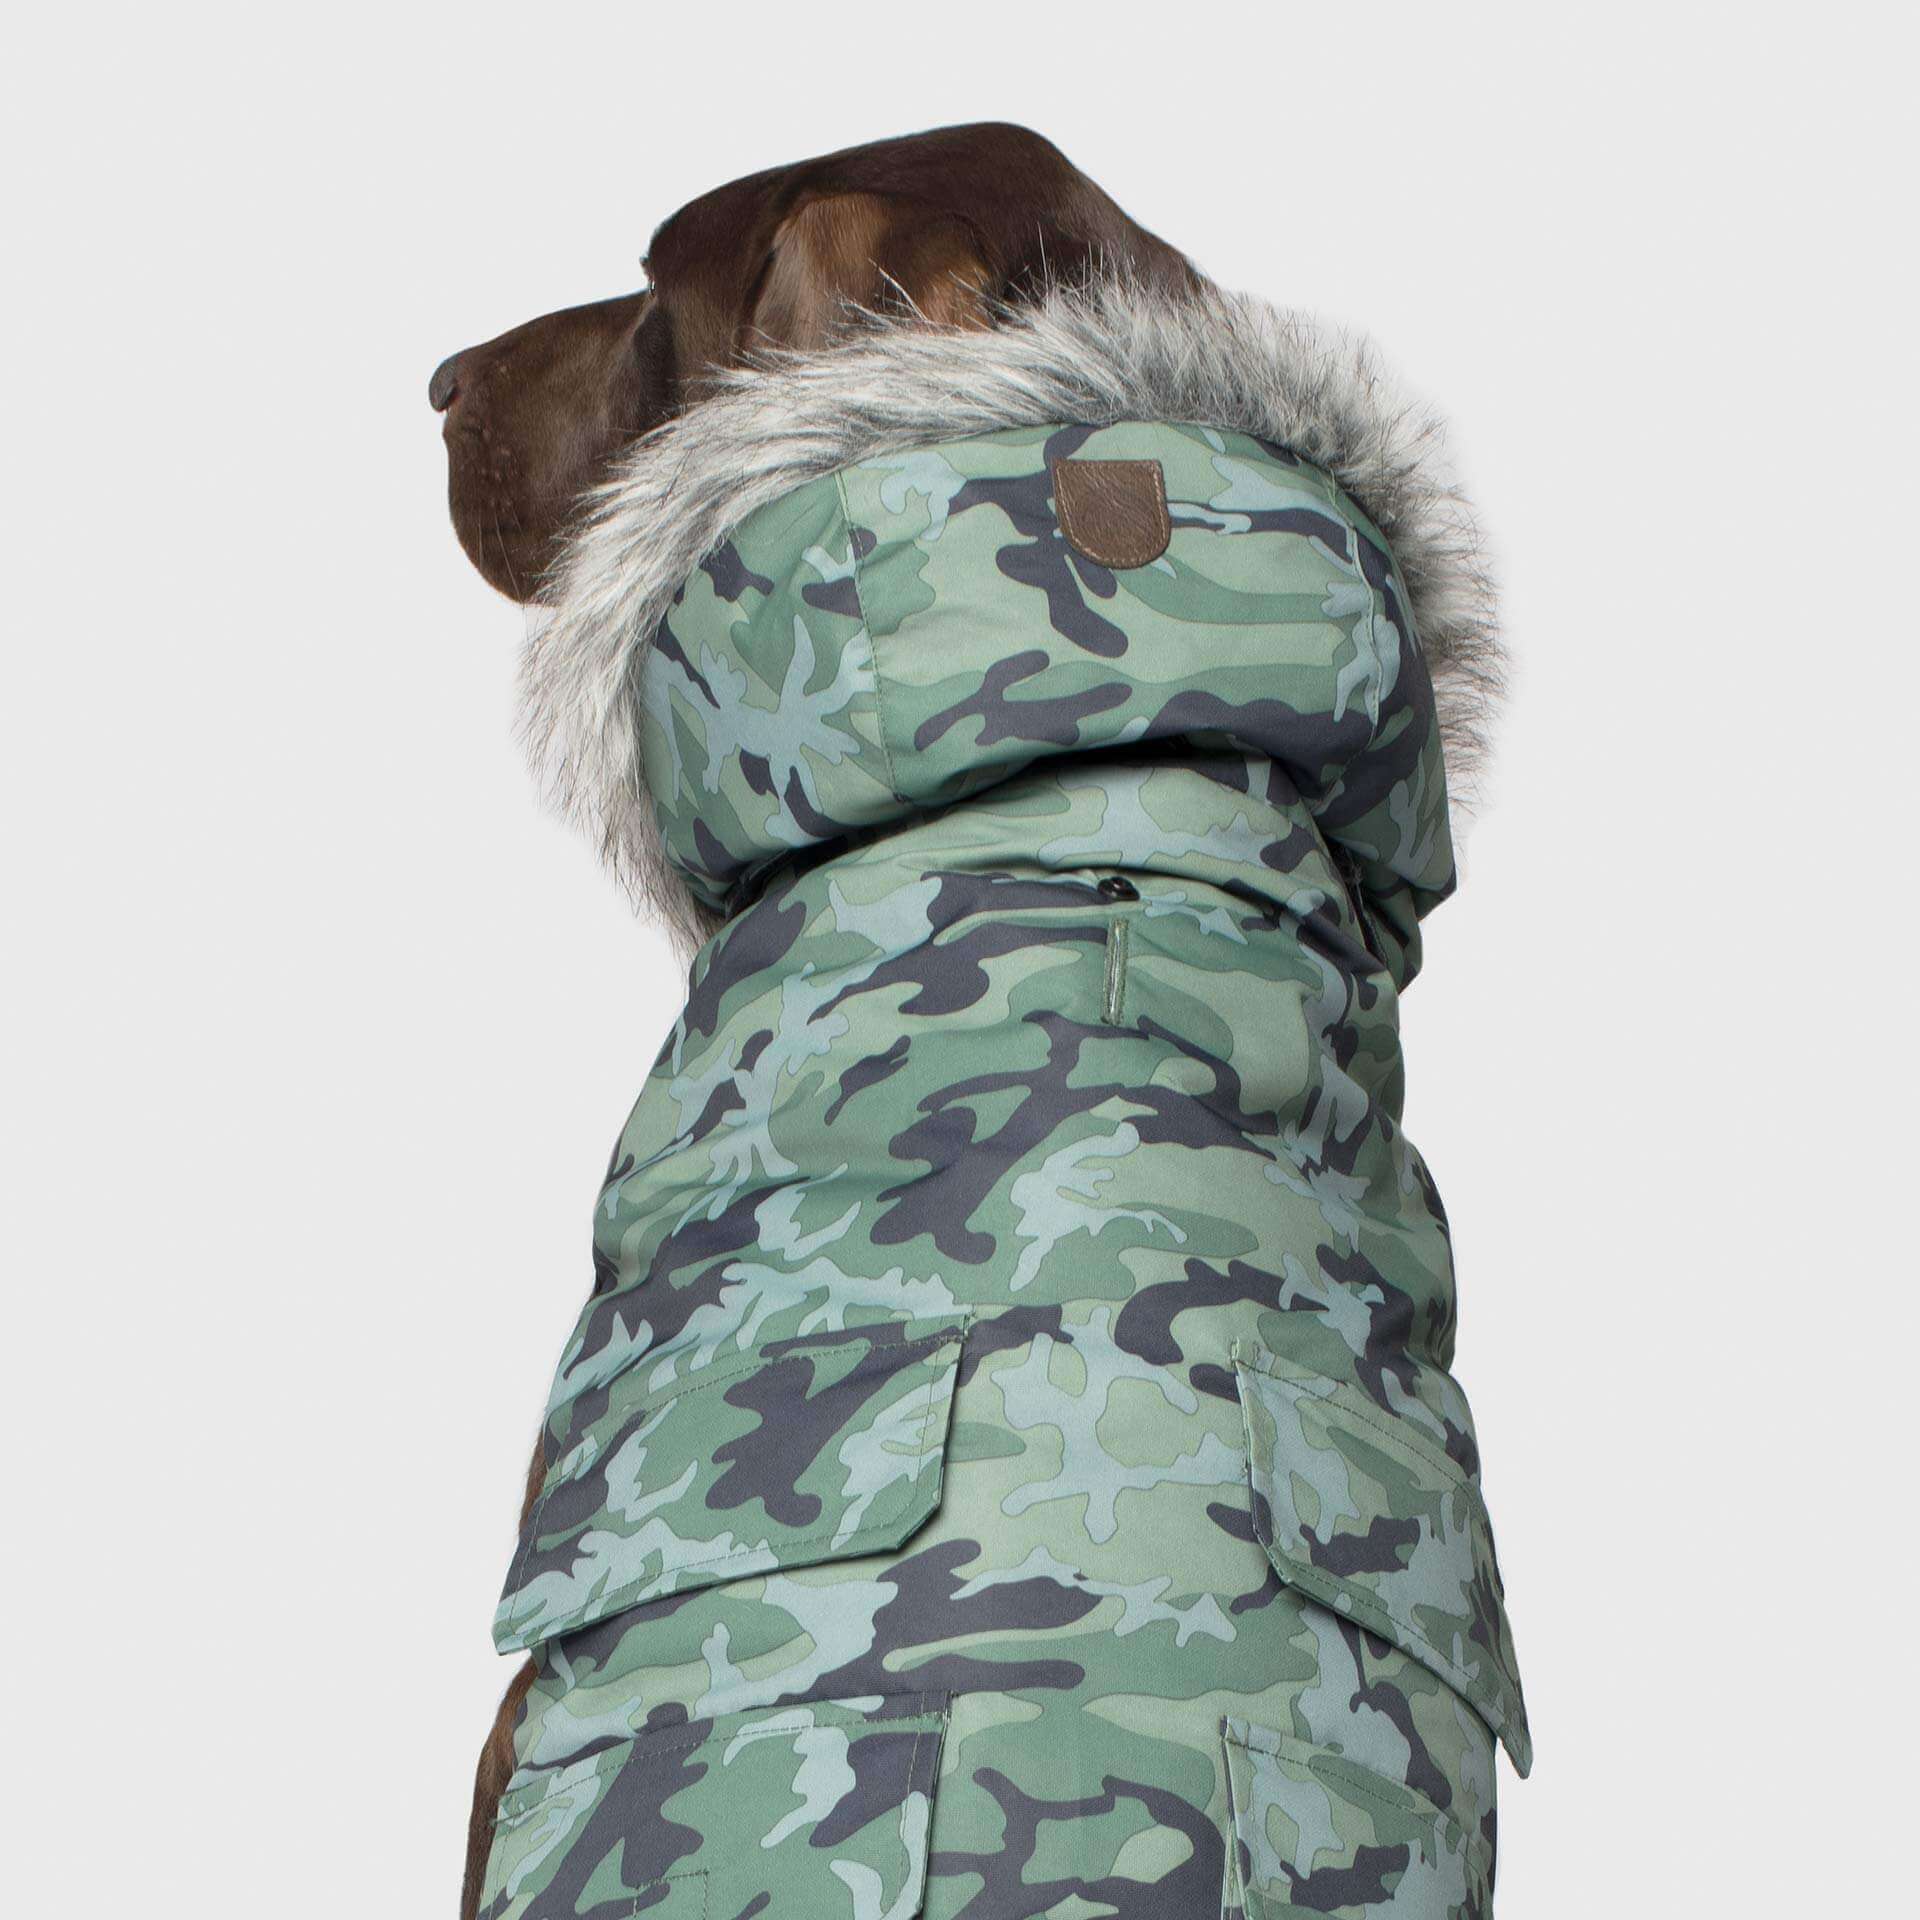 Canada Pooch manteau Manteau pour chien Everest Explorer Camo Canada Pooch